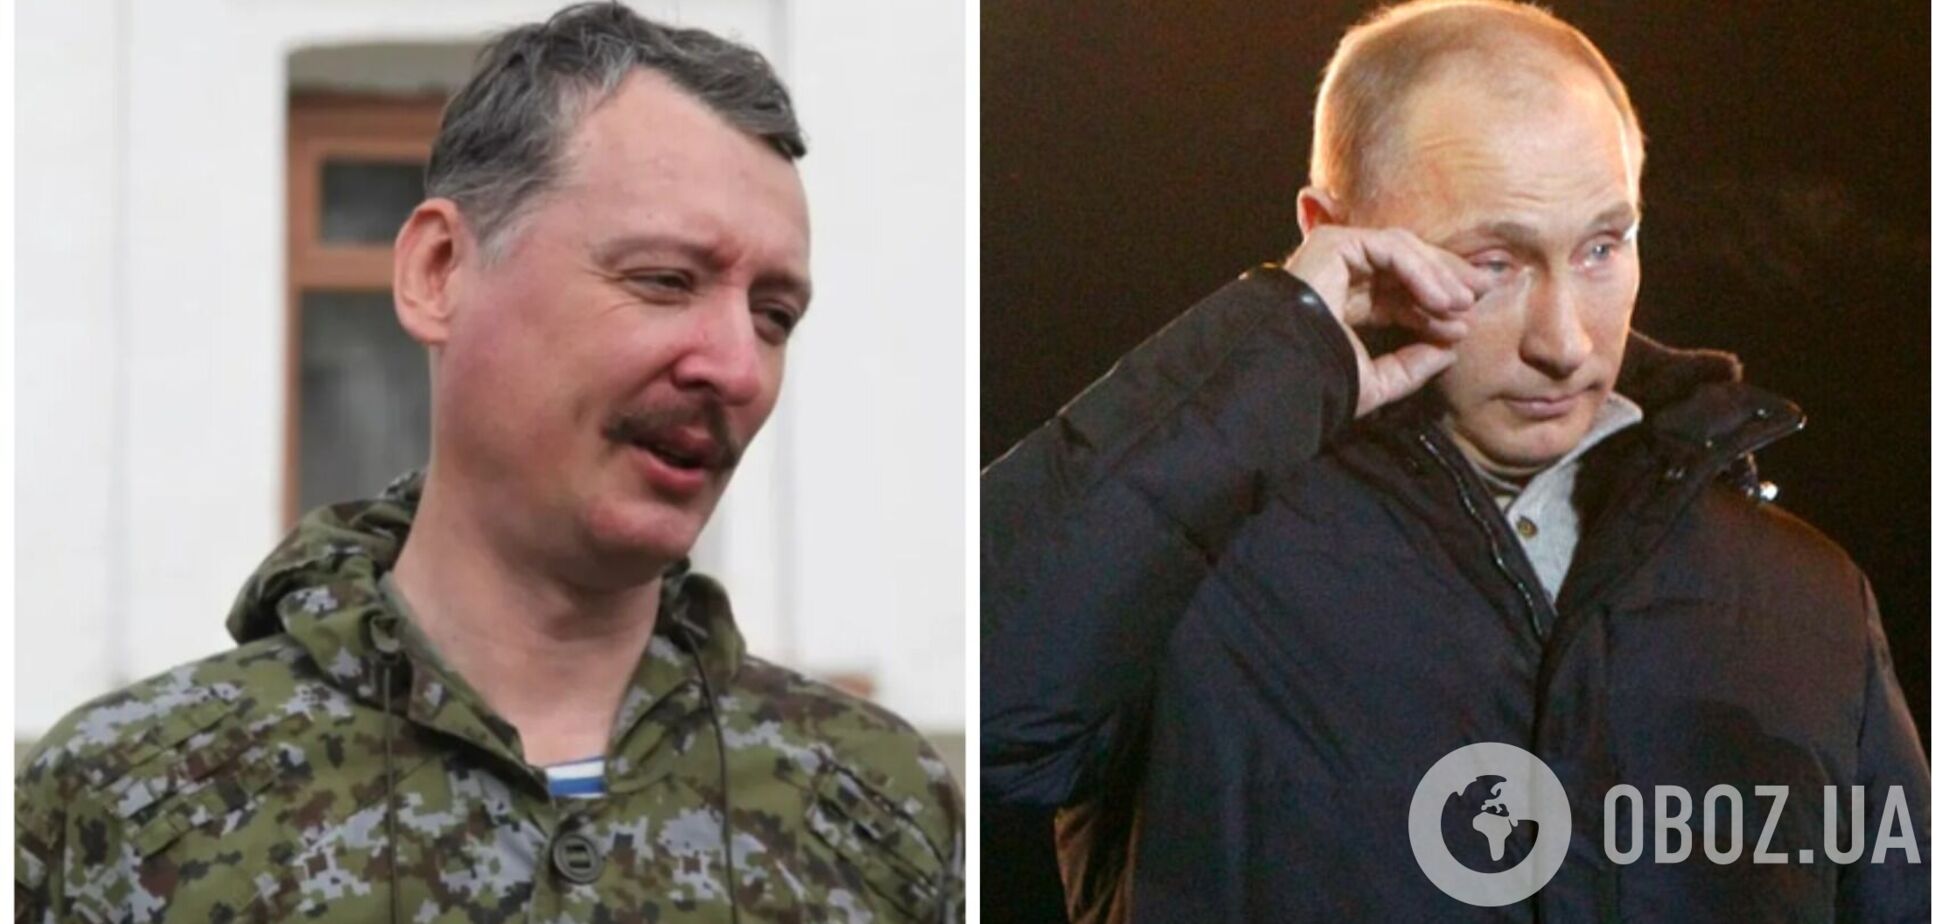 Терорист Стрєлков – Путіну: покажіть голову того, через кого ви прос*али бліц-кріг в Україні. Відео